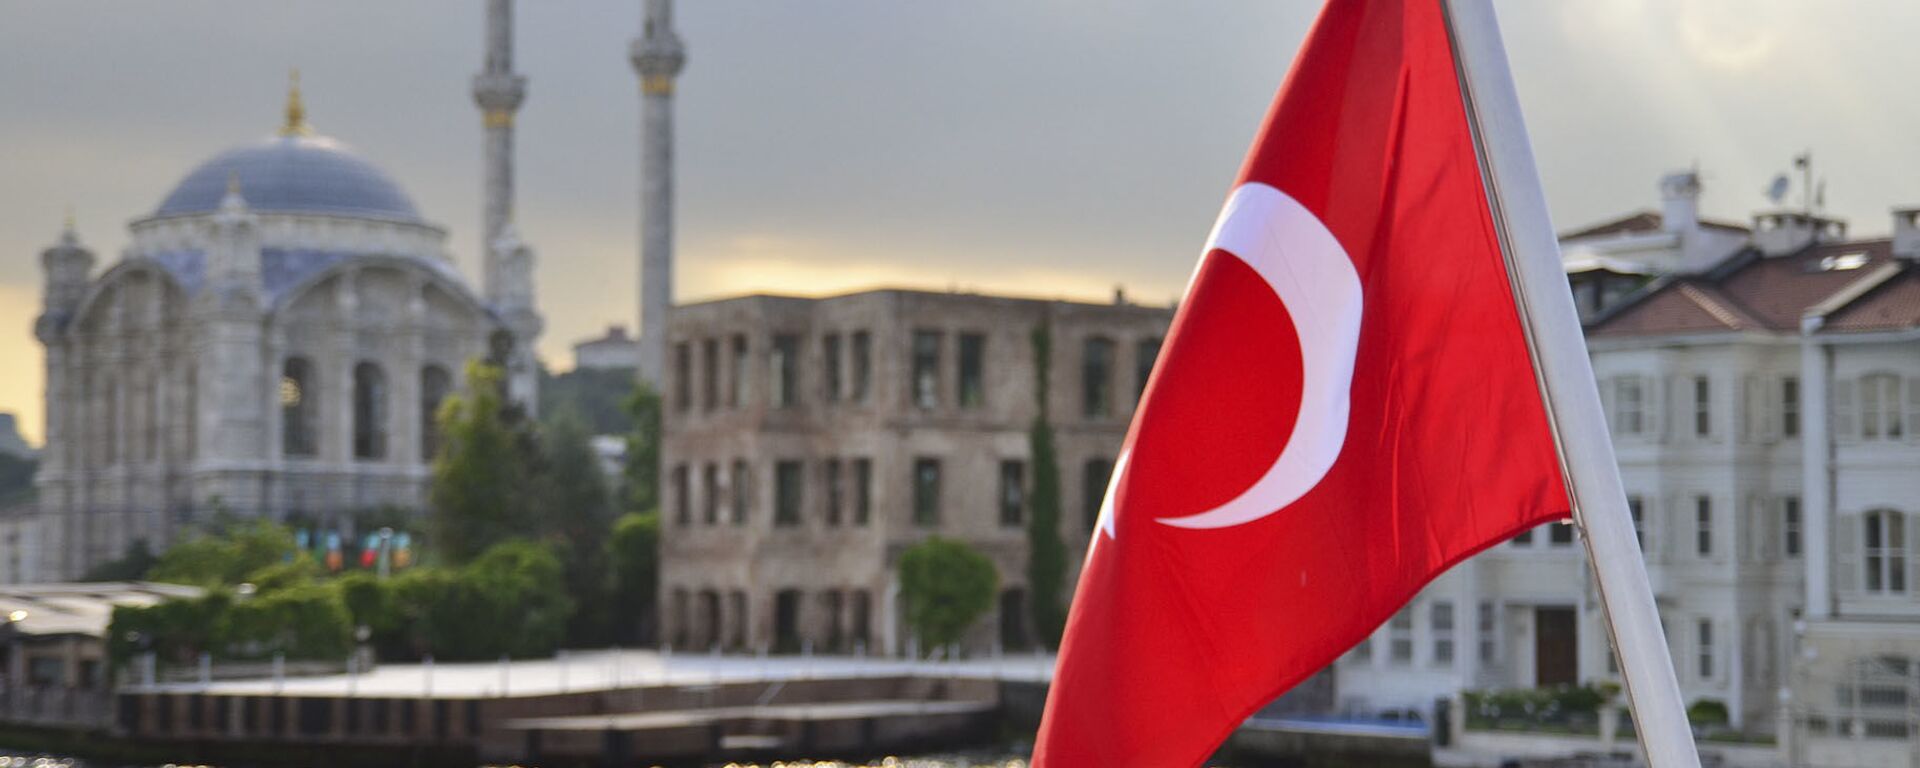 Турецкий флаг на фоне стамбульского пейзажа - Sputnik Абхазия, 1920, 13.04.2021